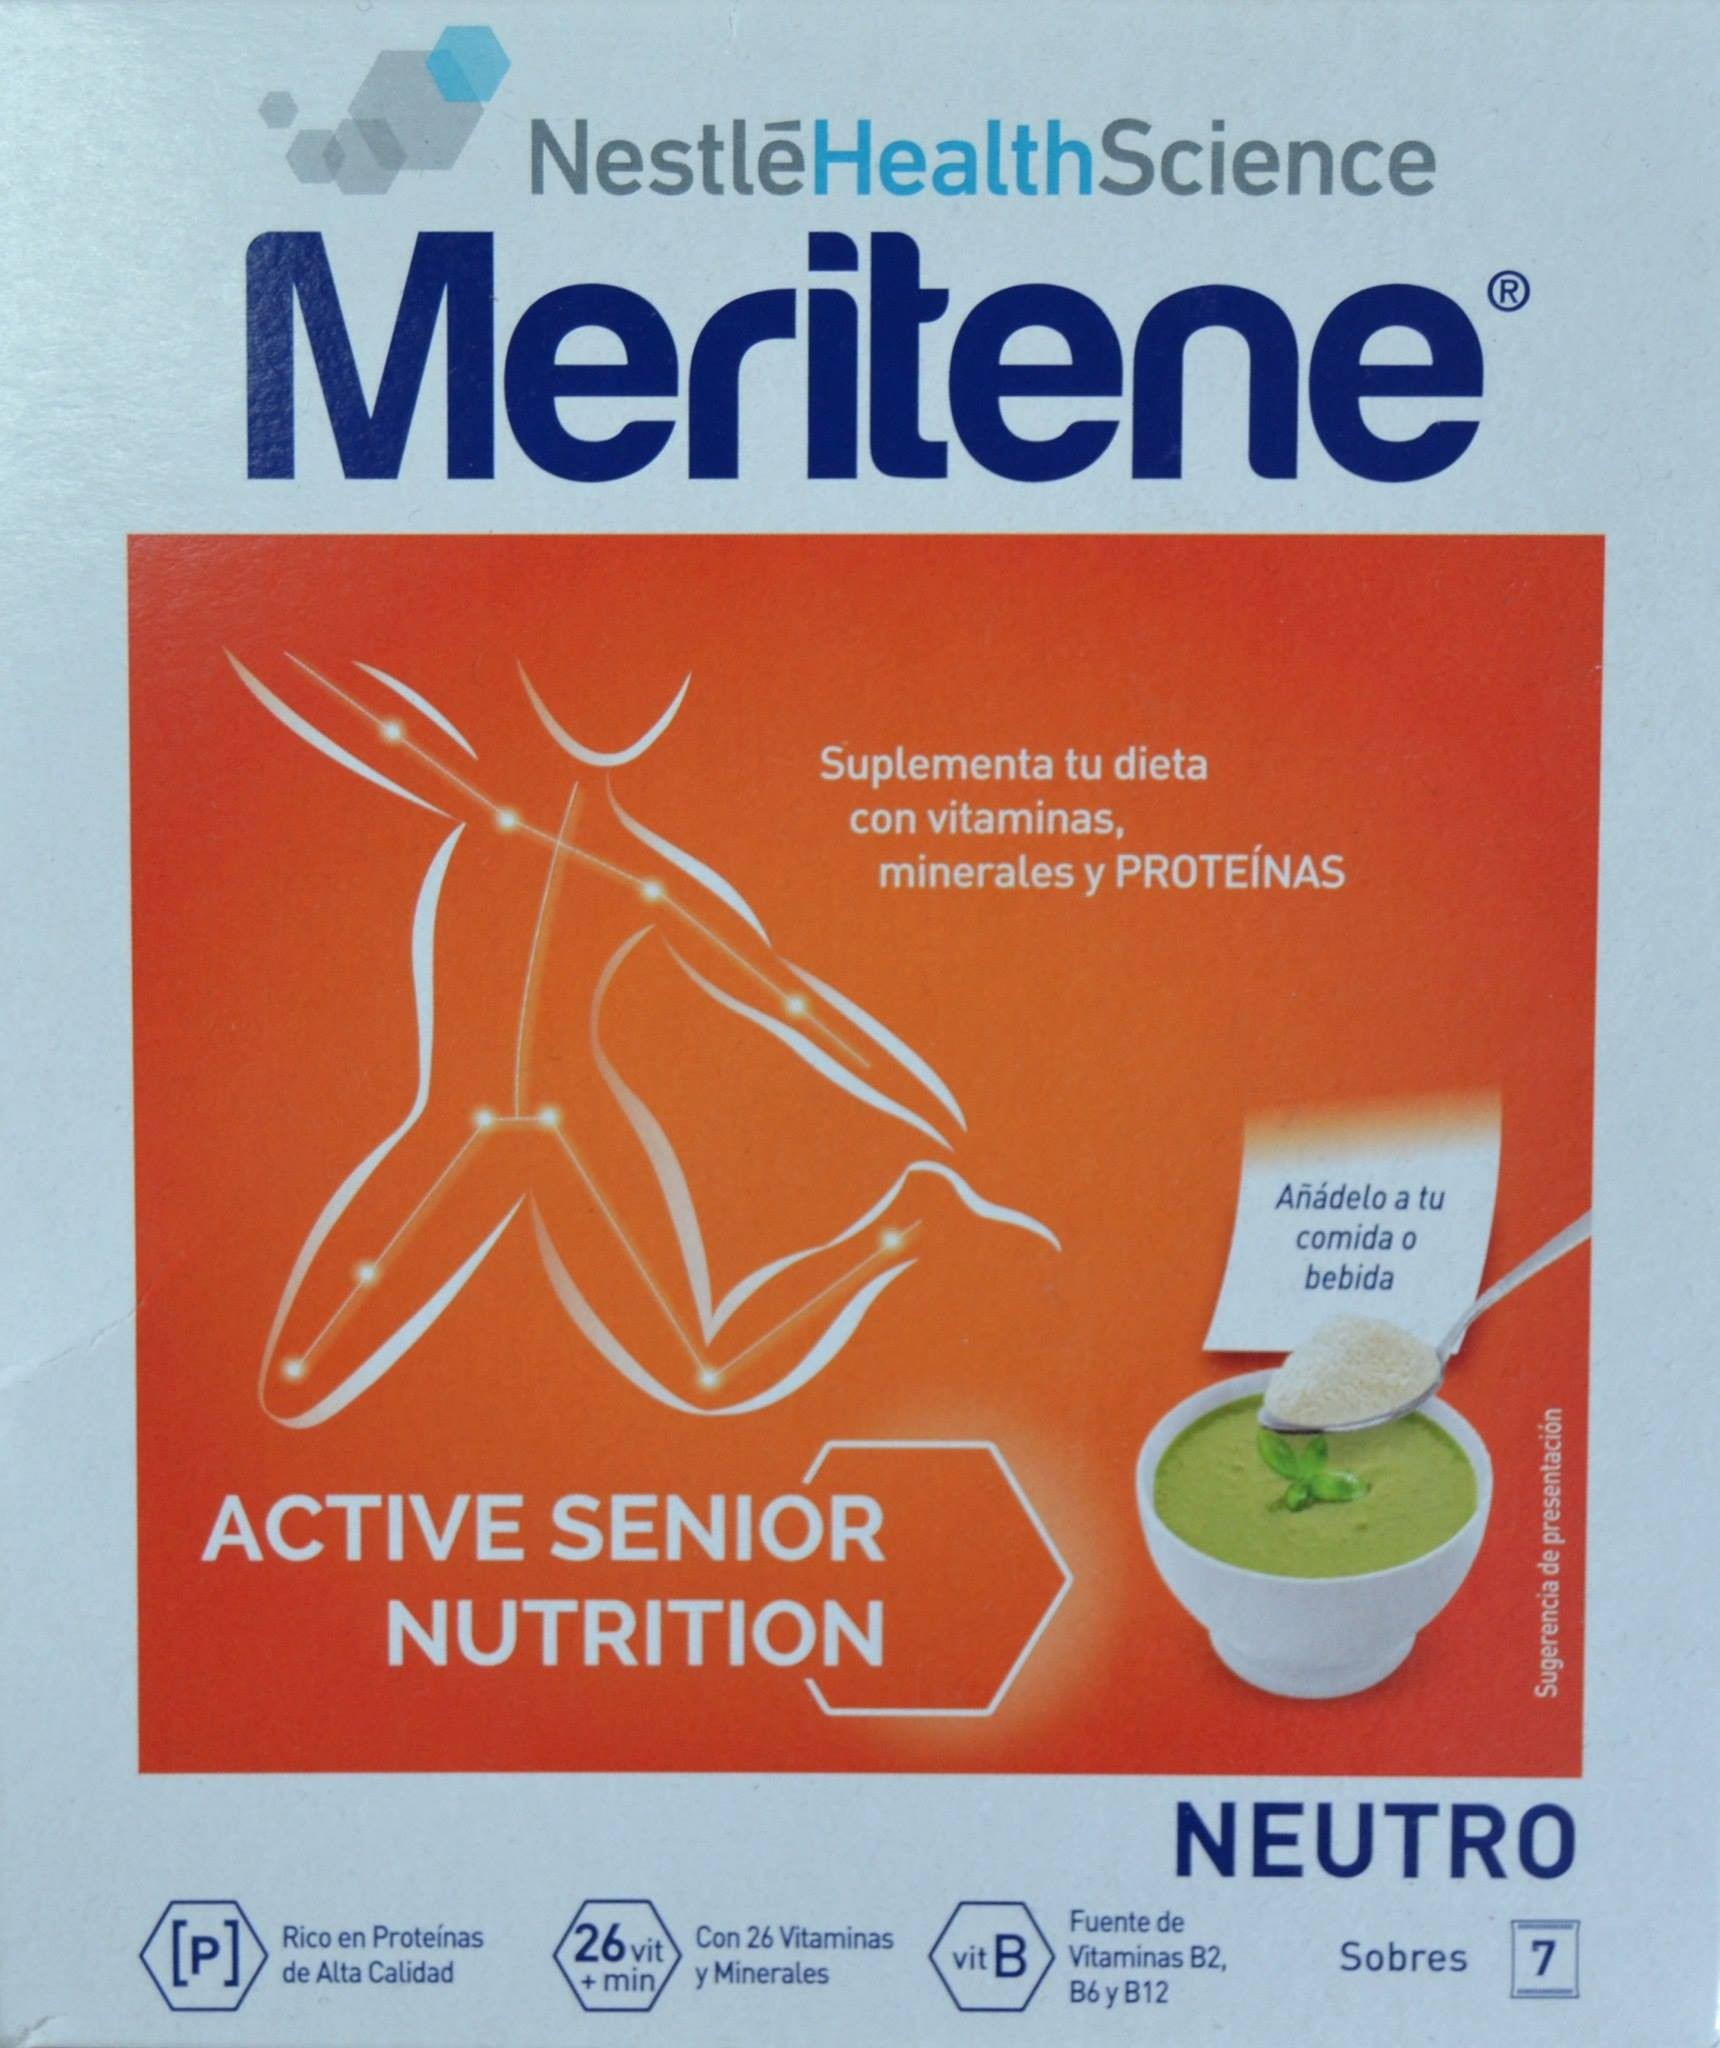 Nuevo Meritene® Clinical Extra Protein de Nestlé Health Science -  Farmaventas - Noticias para la Farmacia y el Farmacéutico